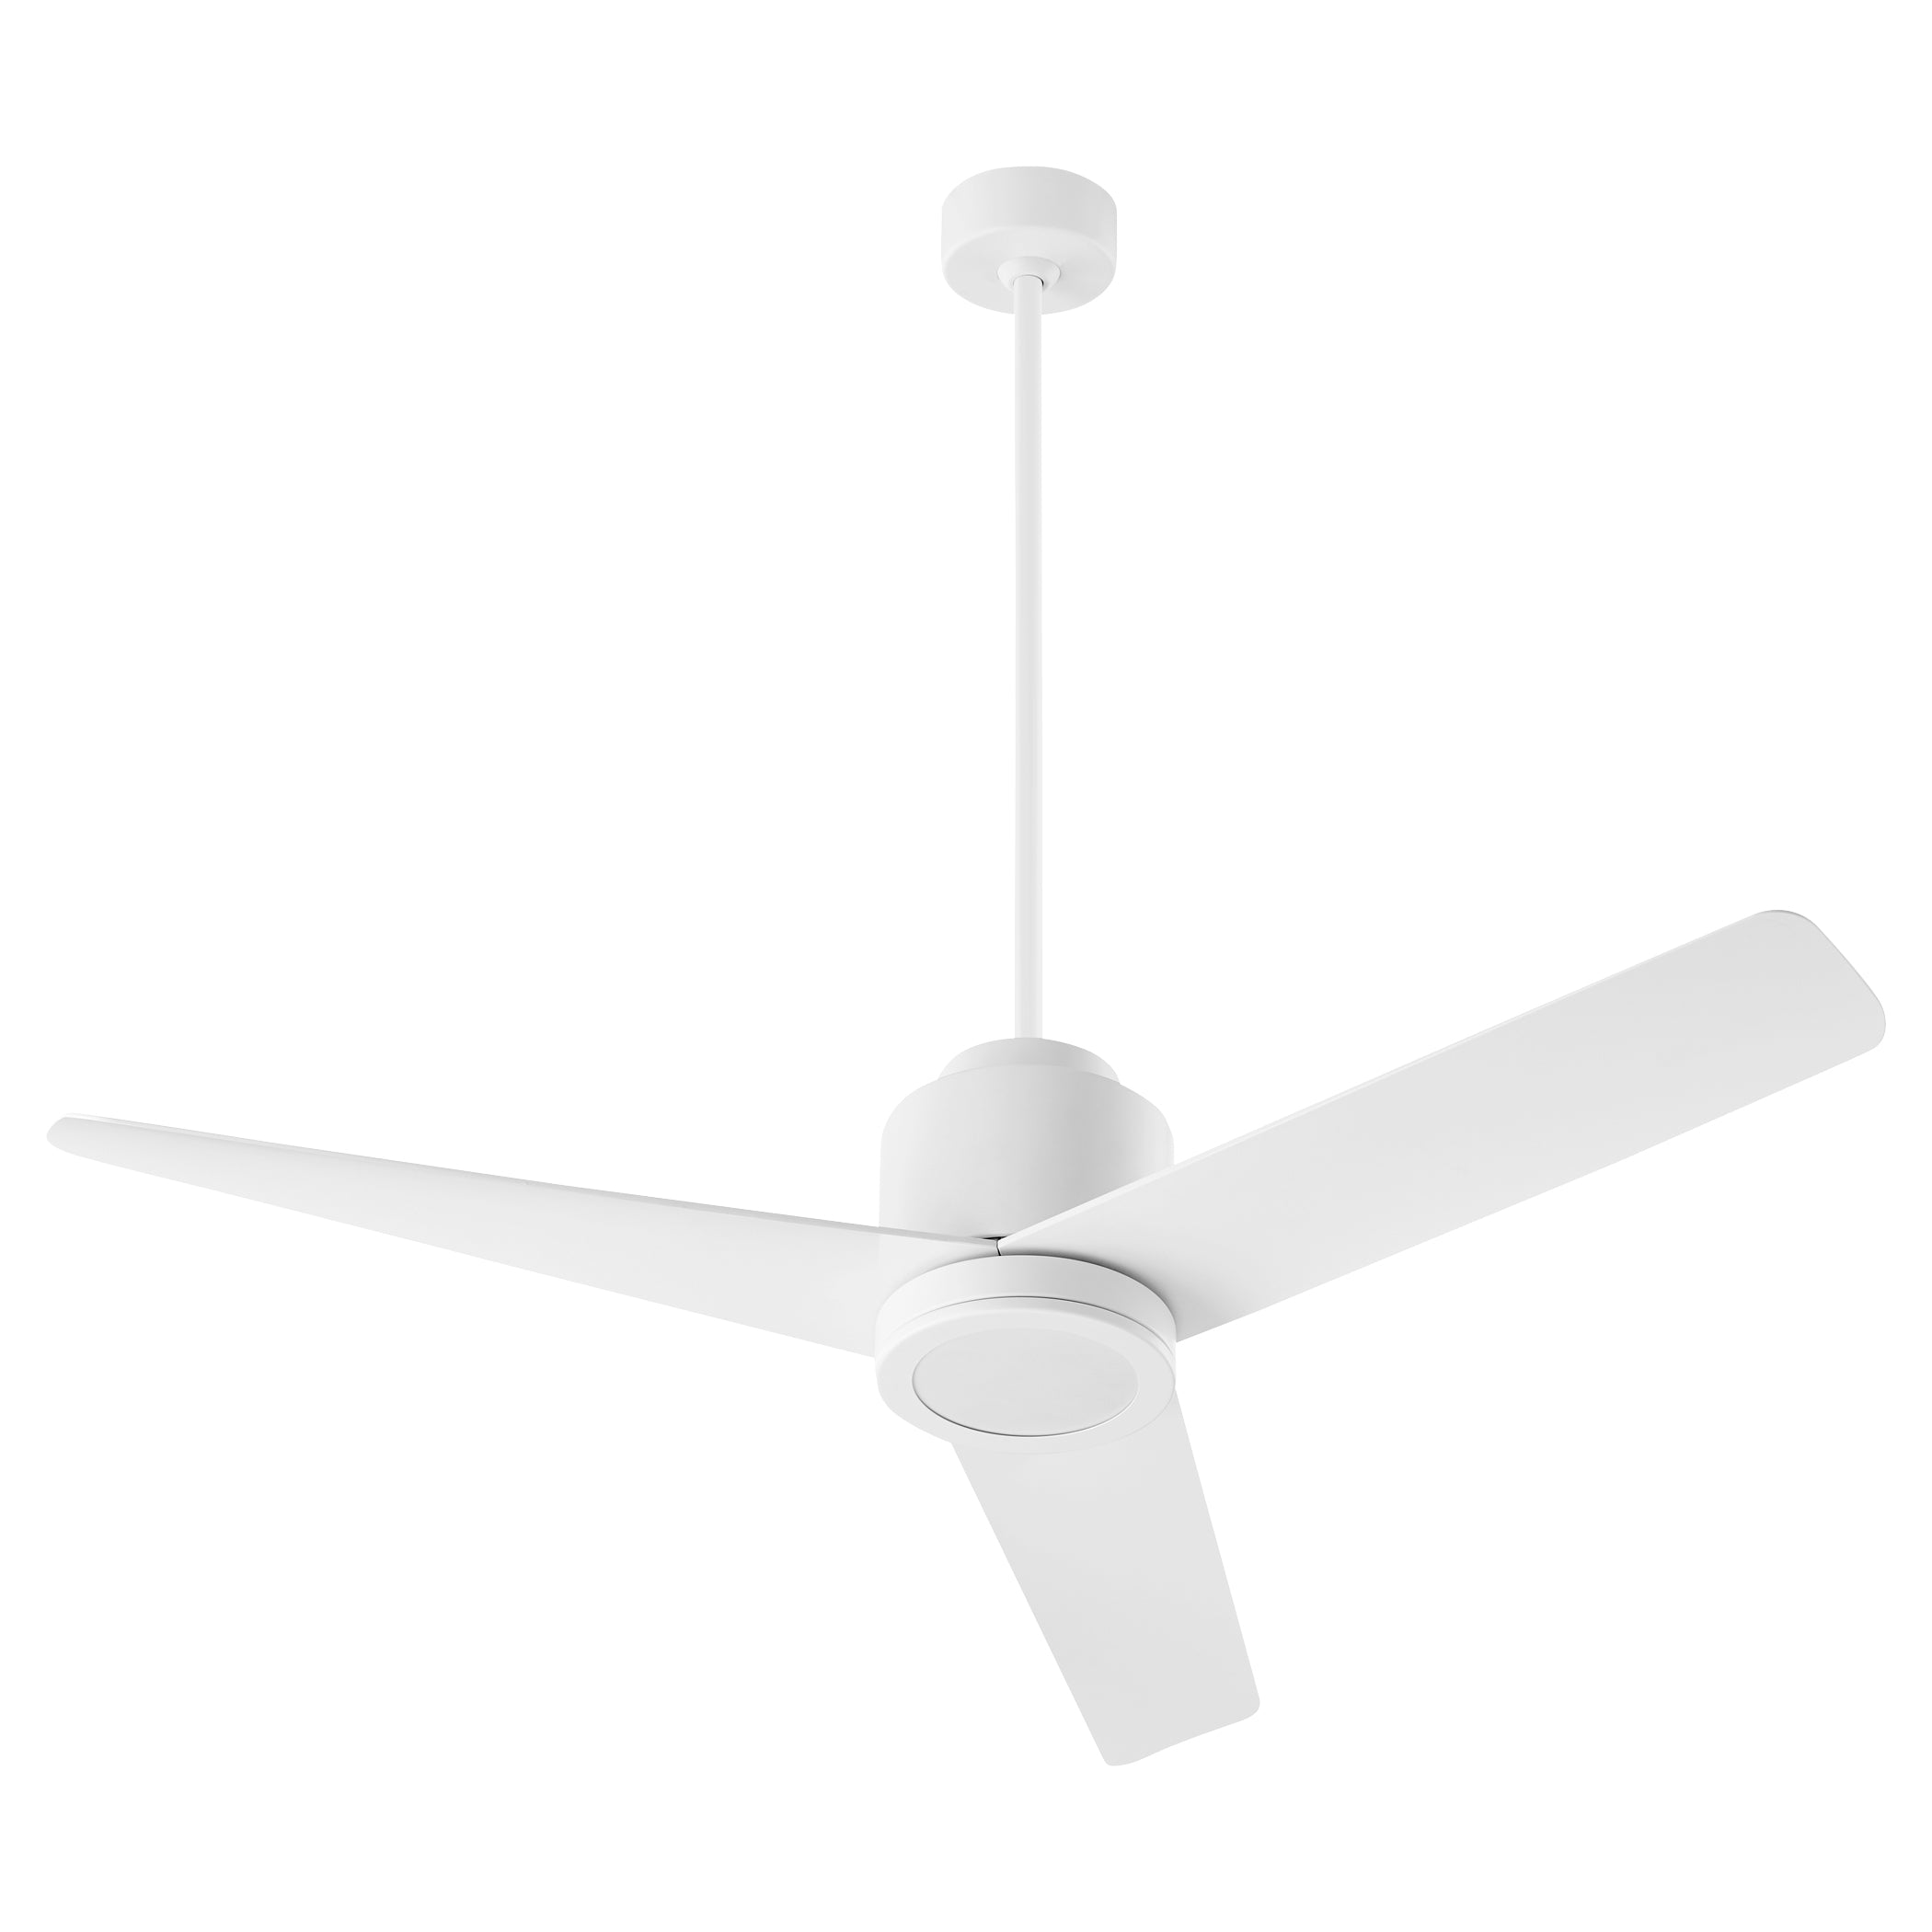 Oxygen Adora 3-110-6 Ceiling Fan - White